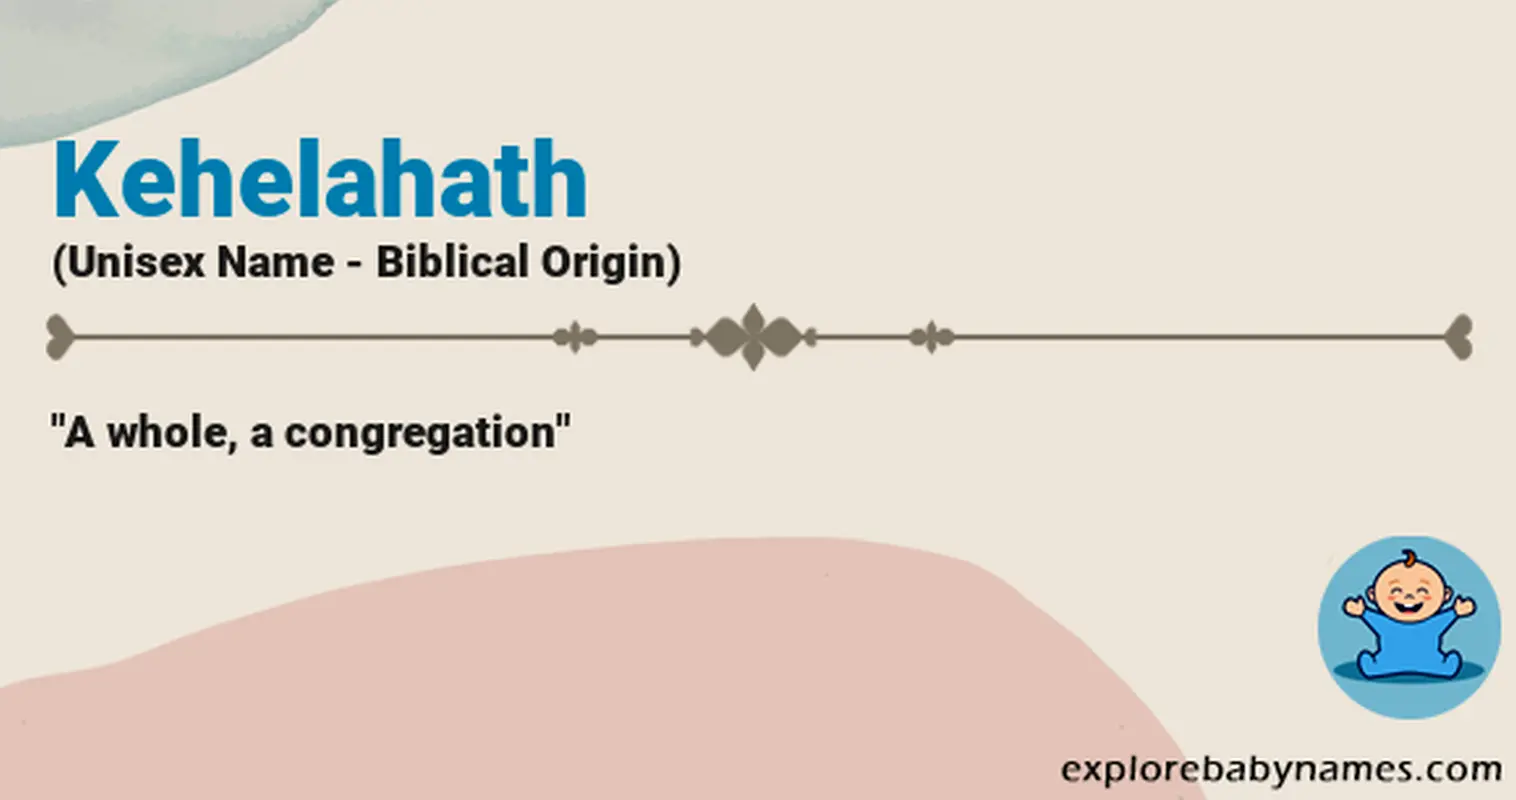 Meaning of Kehelahath